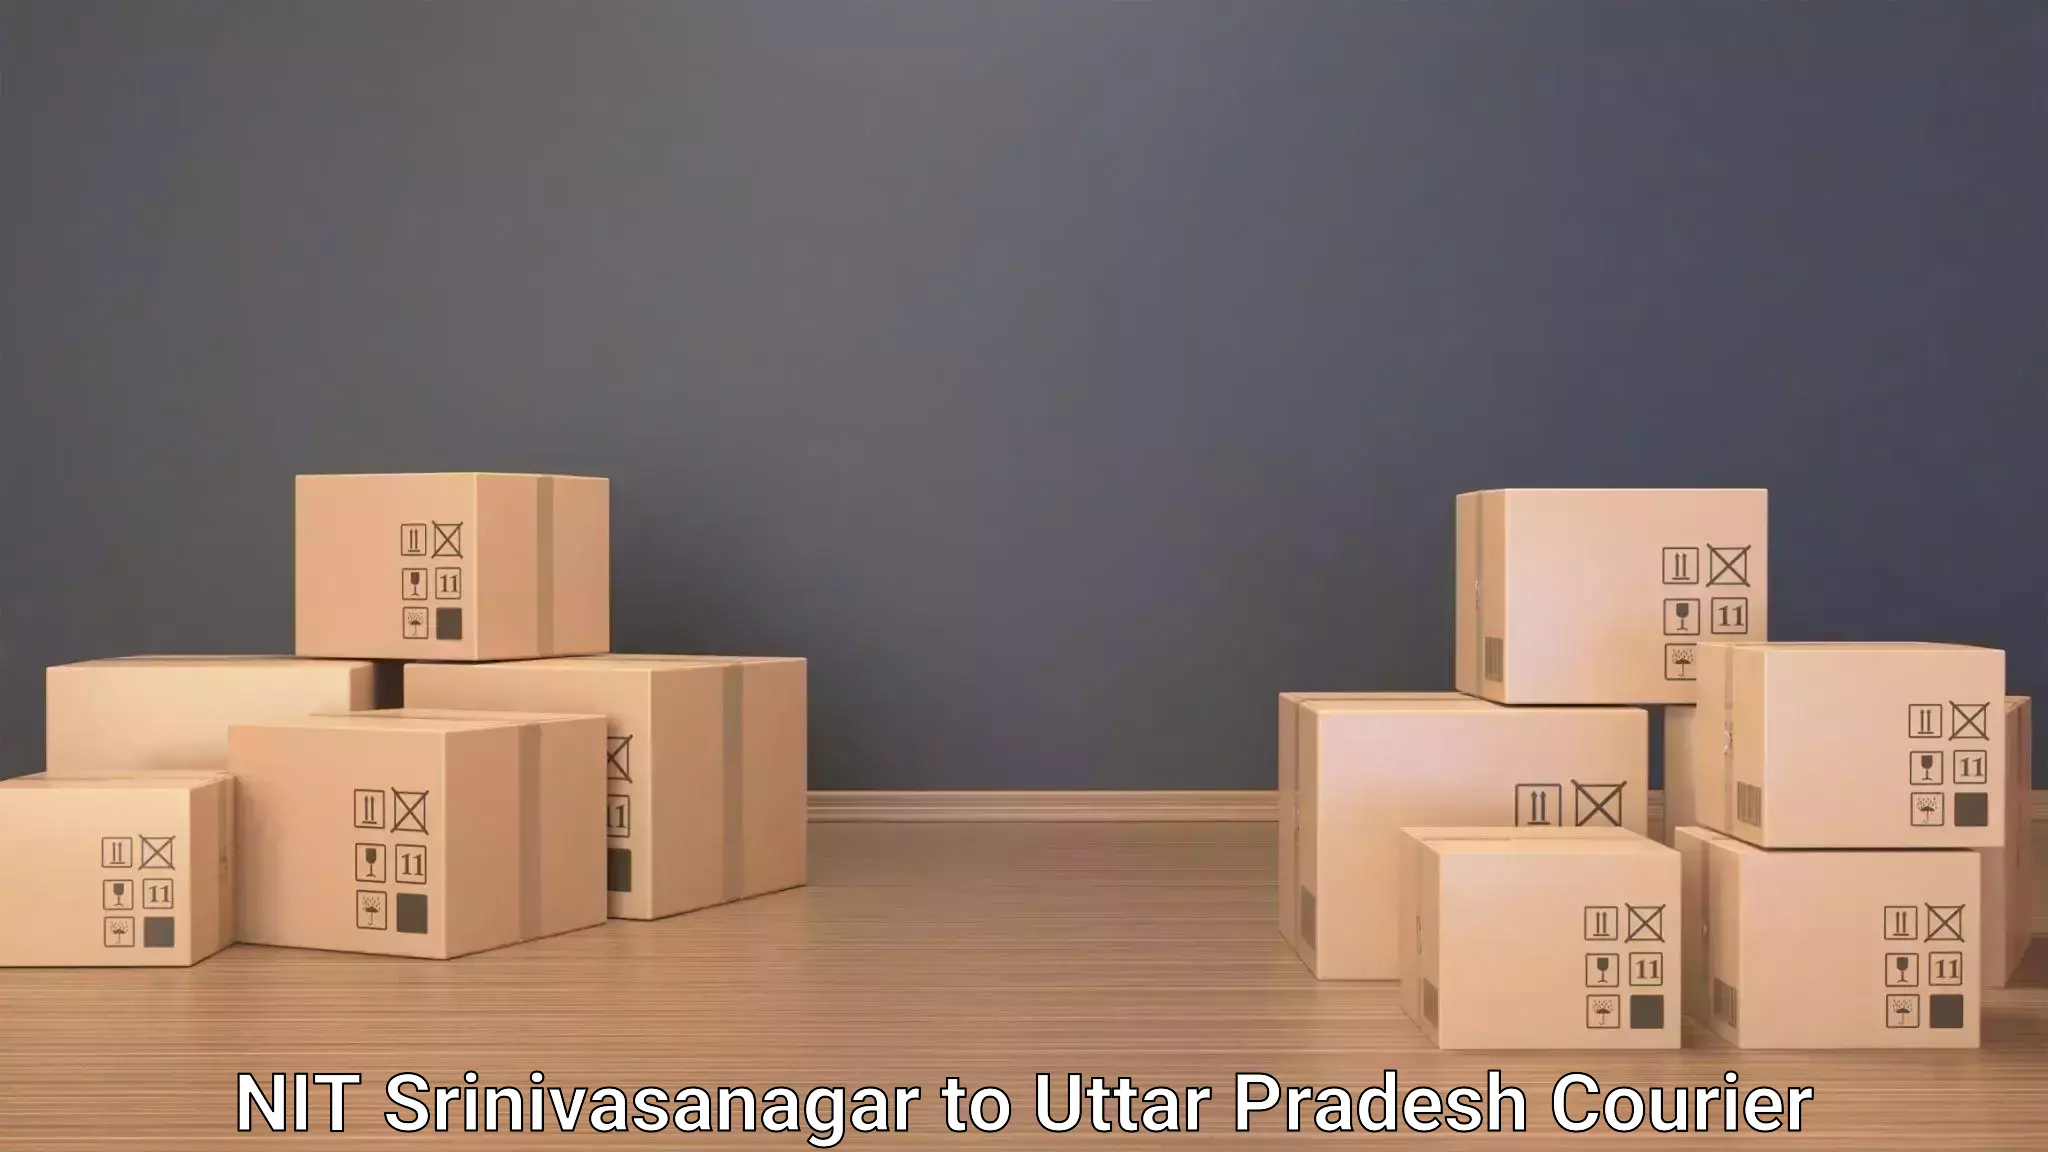 Baggage transport scheduler NIT Srinivasanagar to Dadri